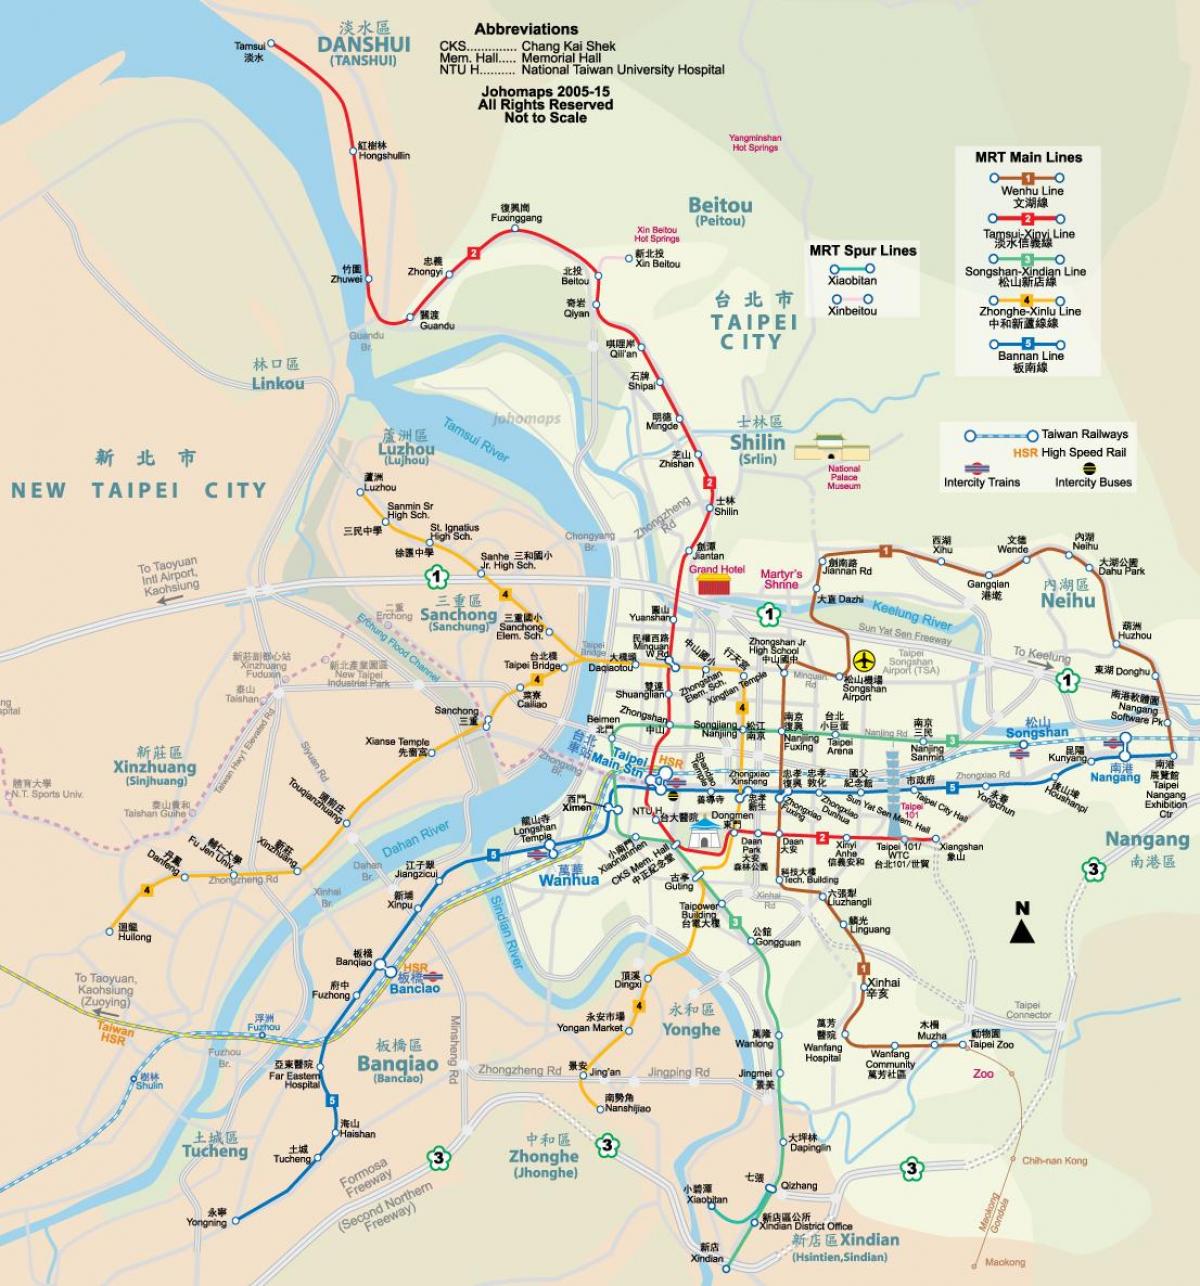 ताइवान ताइपे एमआरटी का नक्शा